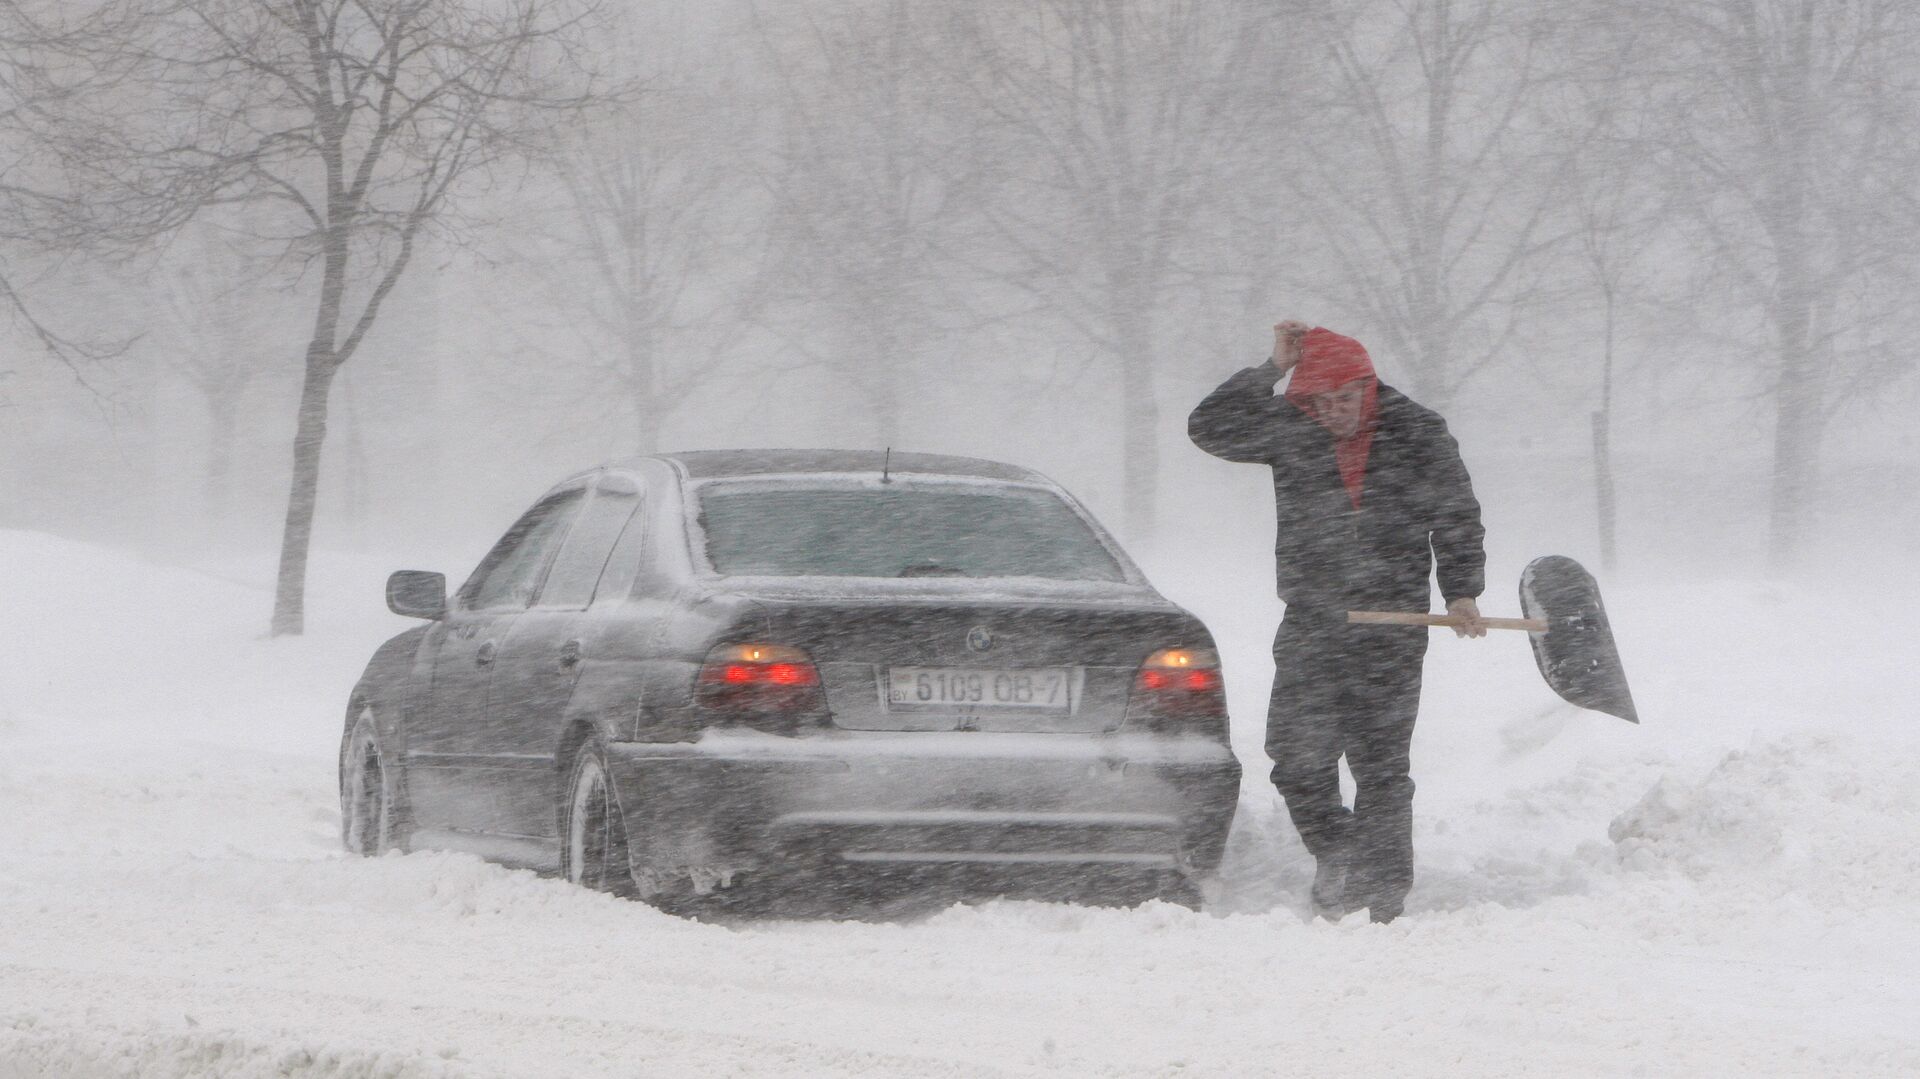 Автовладелец расчищает дорогу от снега - Sputnik Беларусь, 1920, 26.12.2021